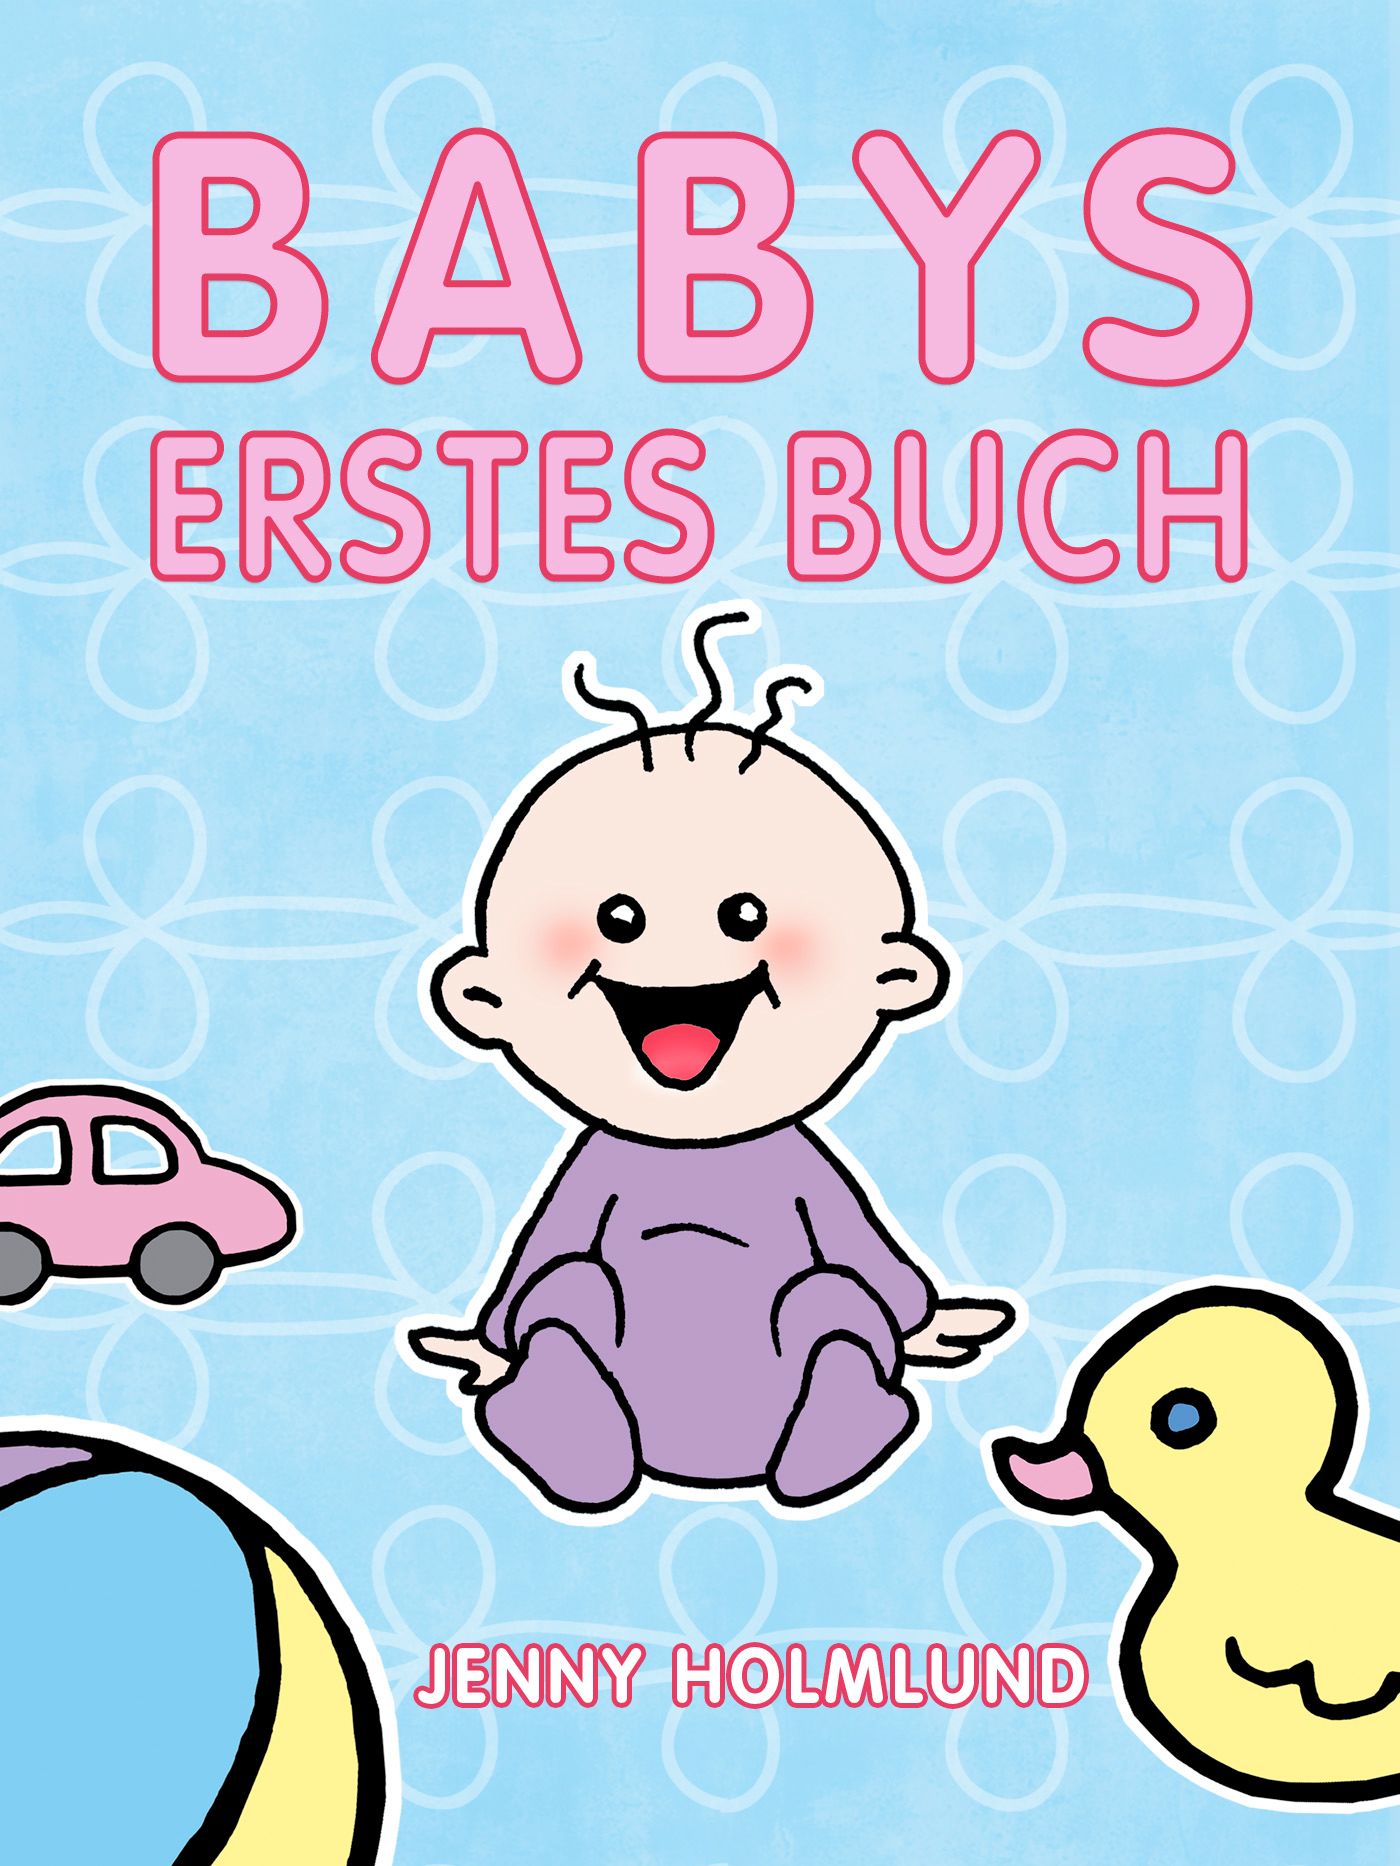 Babys Erstes Buch , e-bok av Jenny Holmlund